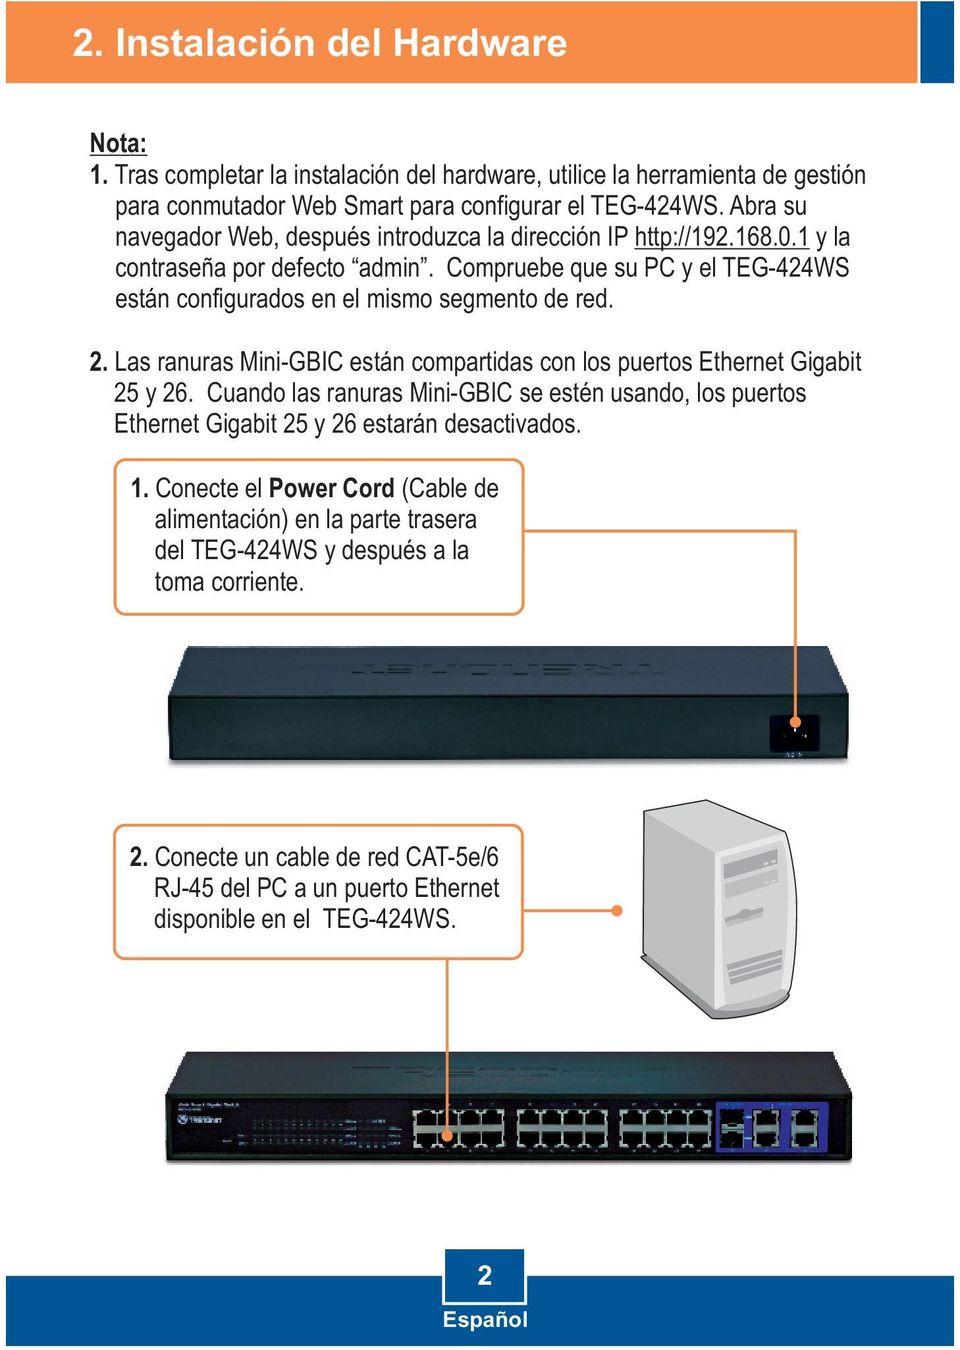 2. Las ranuras Mini-GBIC están compartidas con los puertos Ethernet Gigabit 25 y 26. Cuando las ranuras Mini-GBIC se estén usando, los puertos Ethernet Gigabit 25 y 26 estarán desactivados. 1.